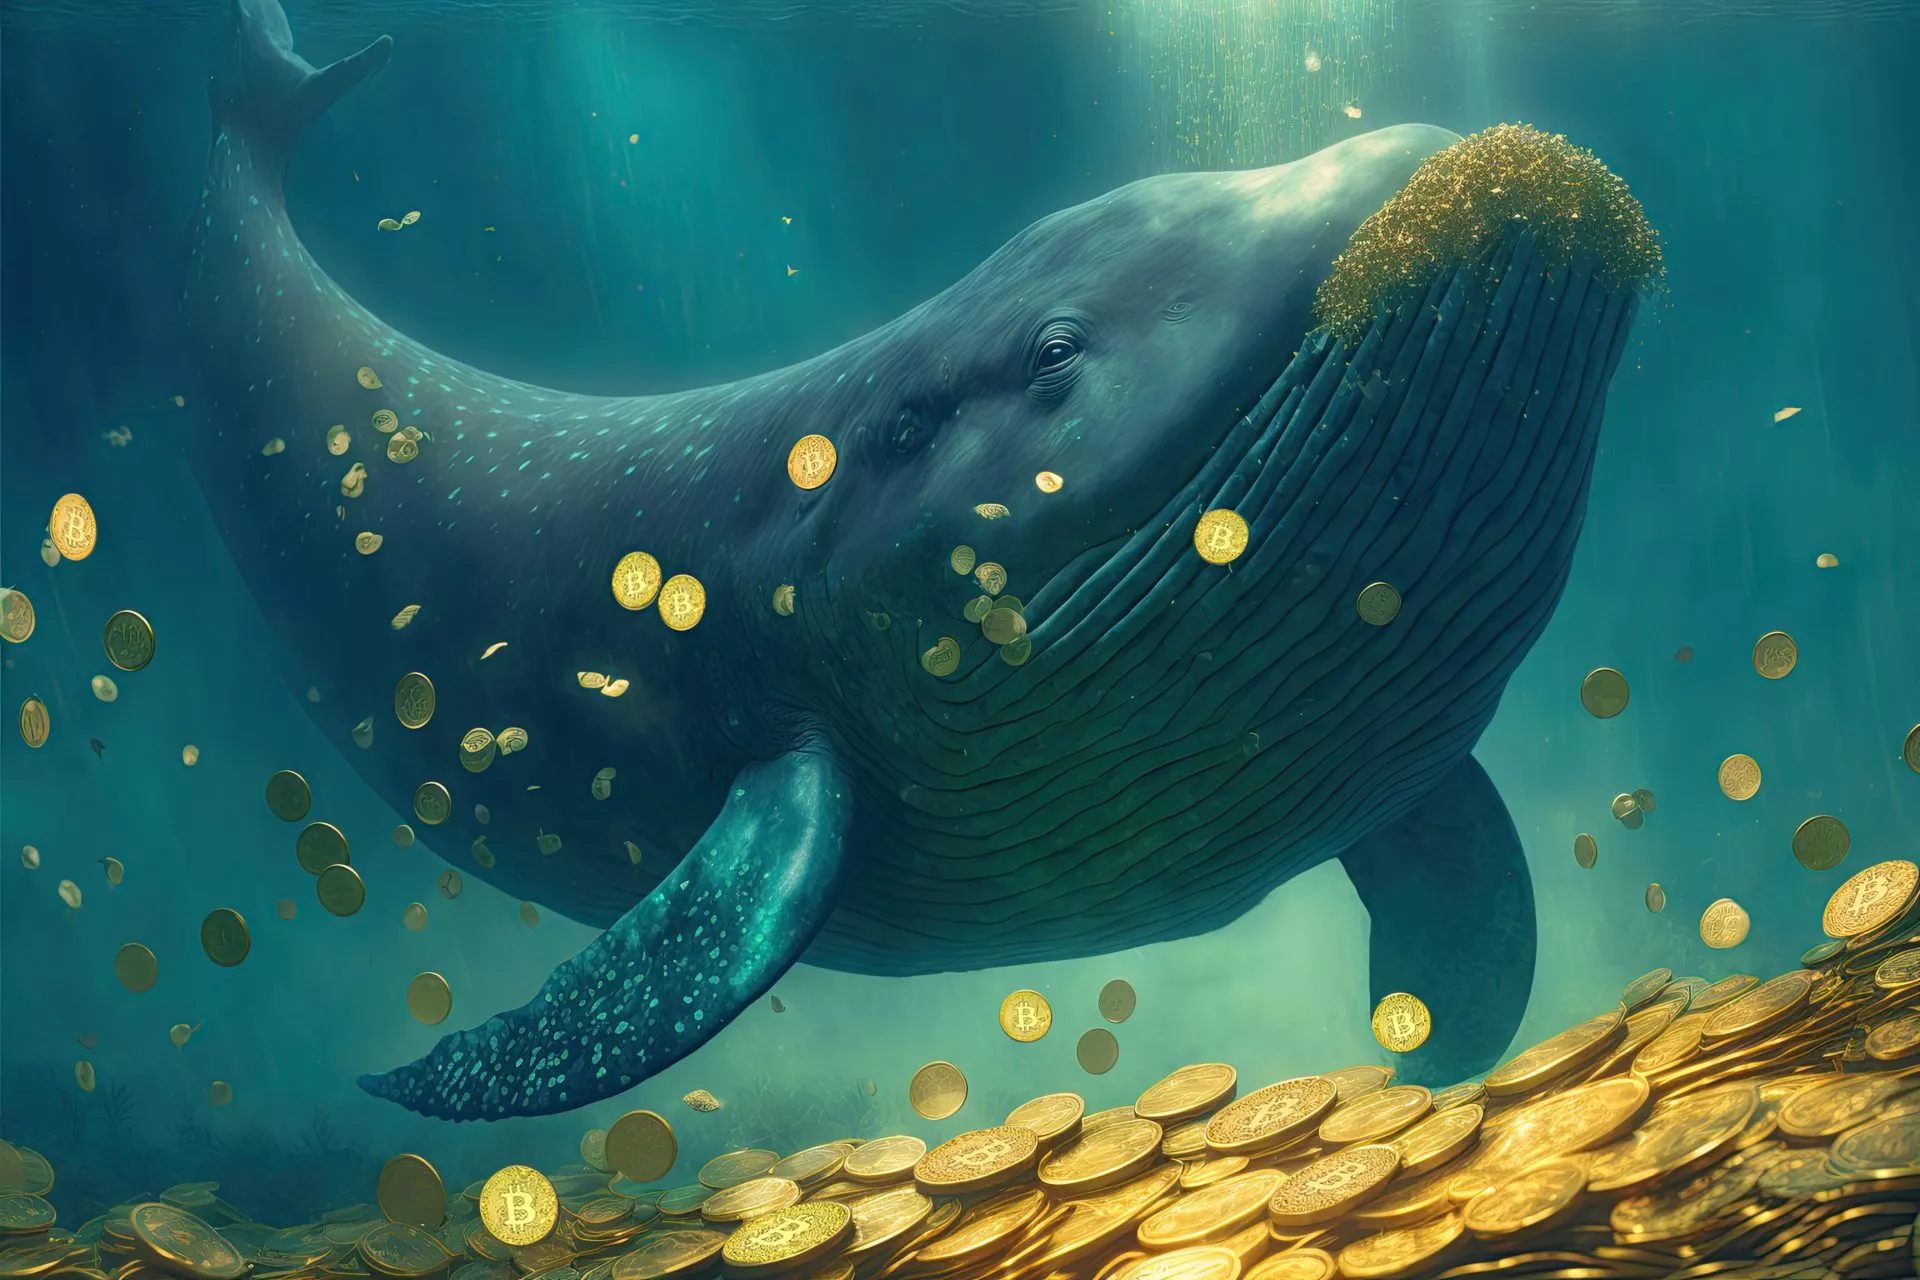 Bitcoin (BTC) Whale